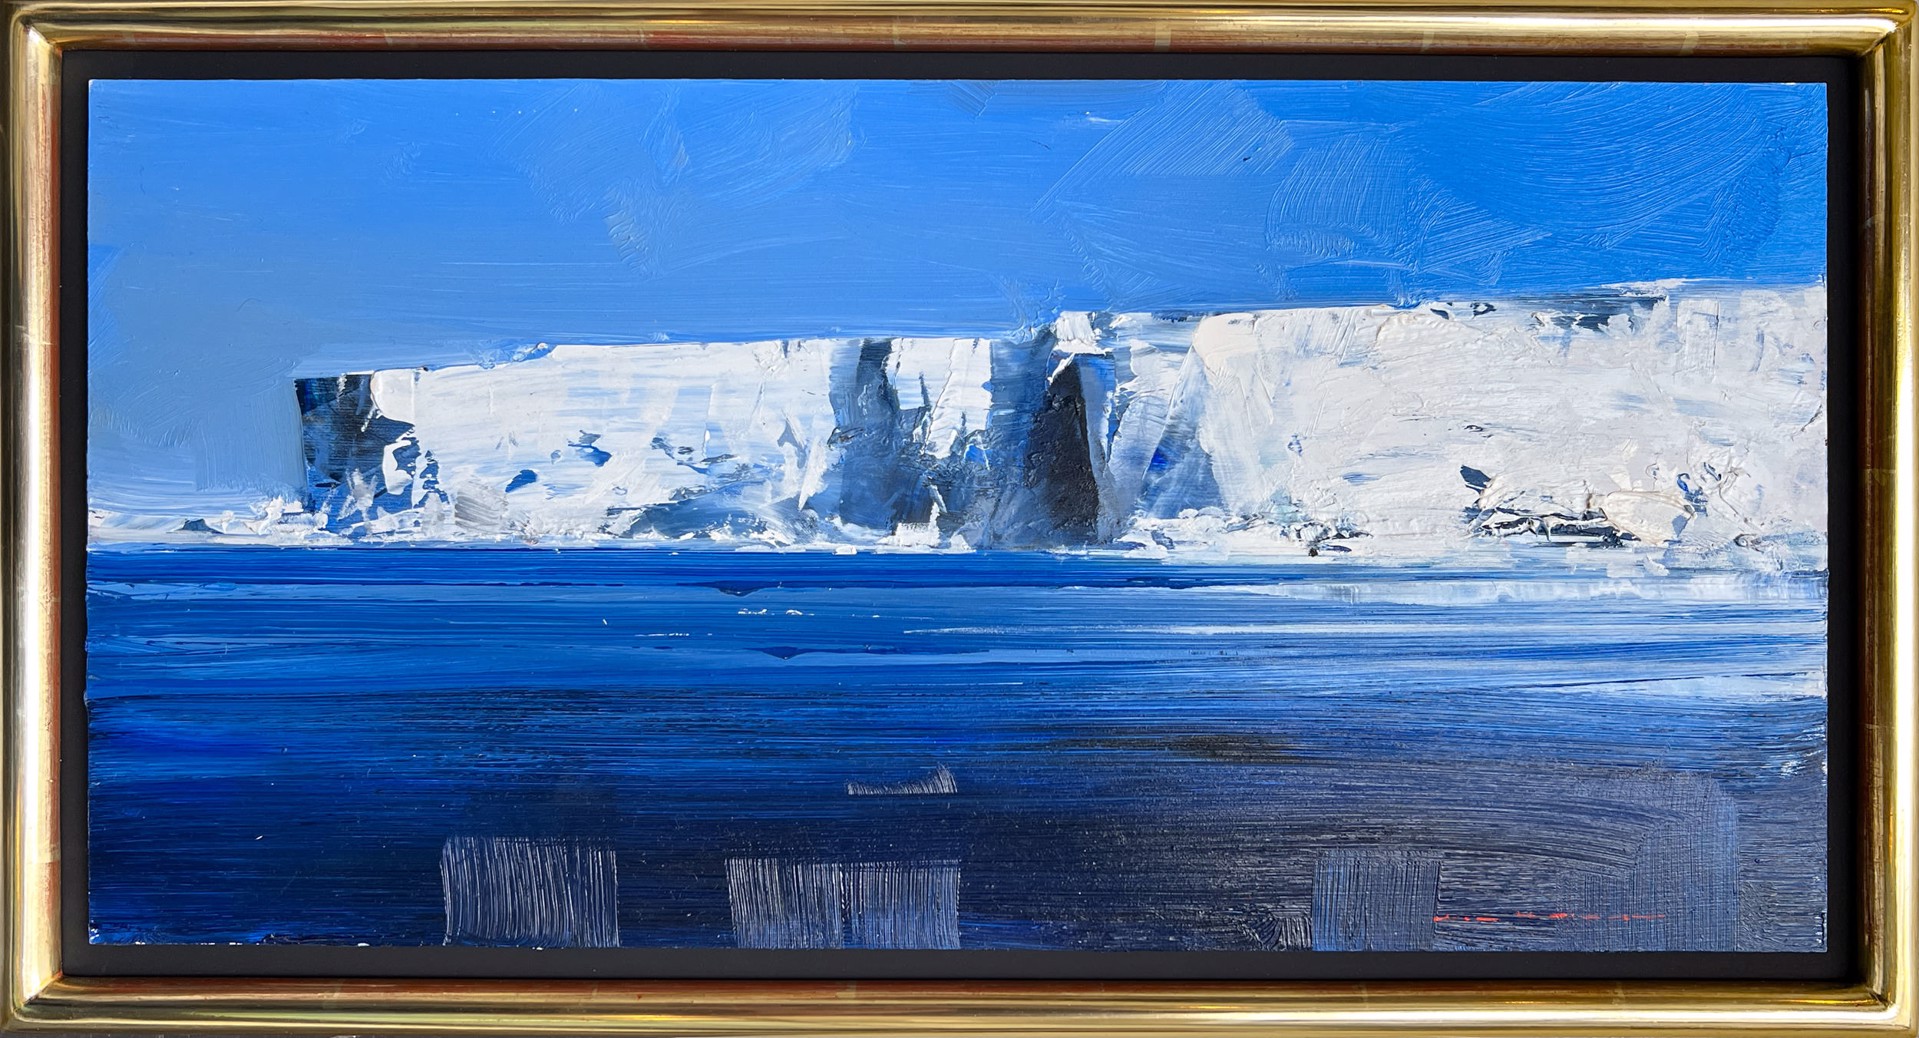 Detaille Island, Antarctica by Ken Knight